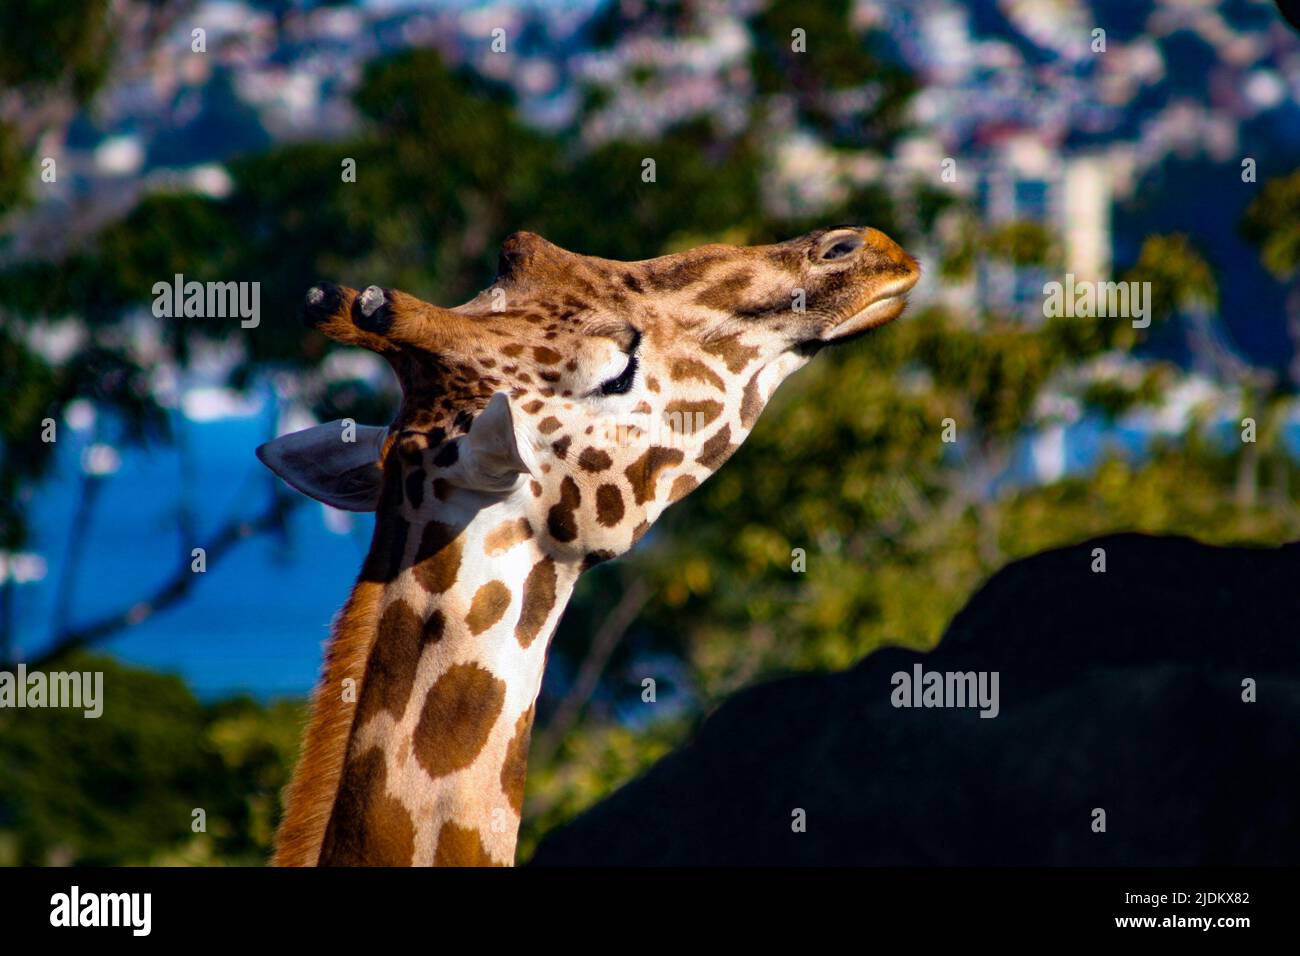 Giraffe looking ahead Stock Photo